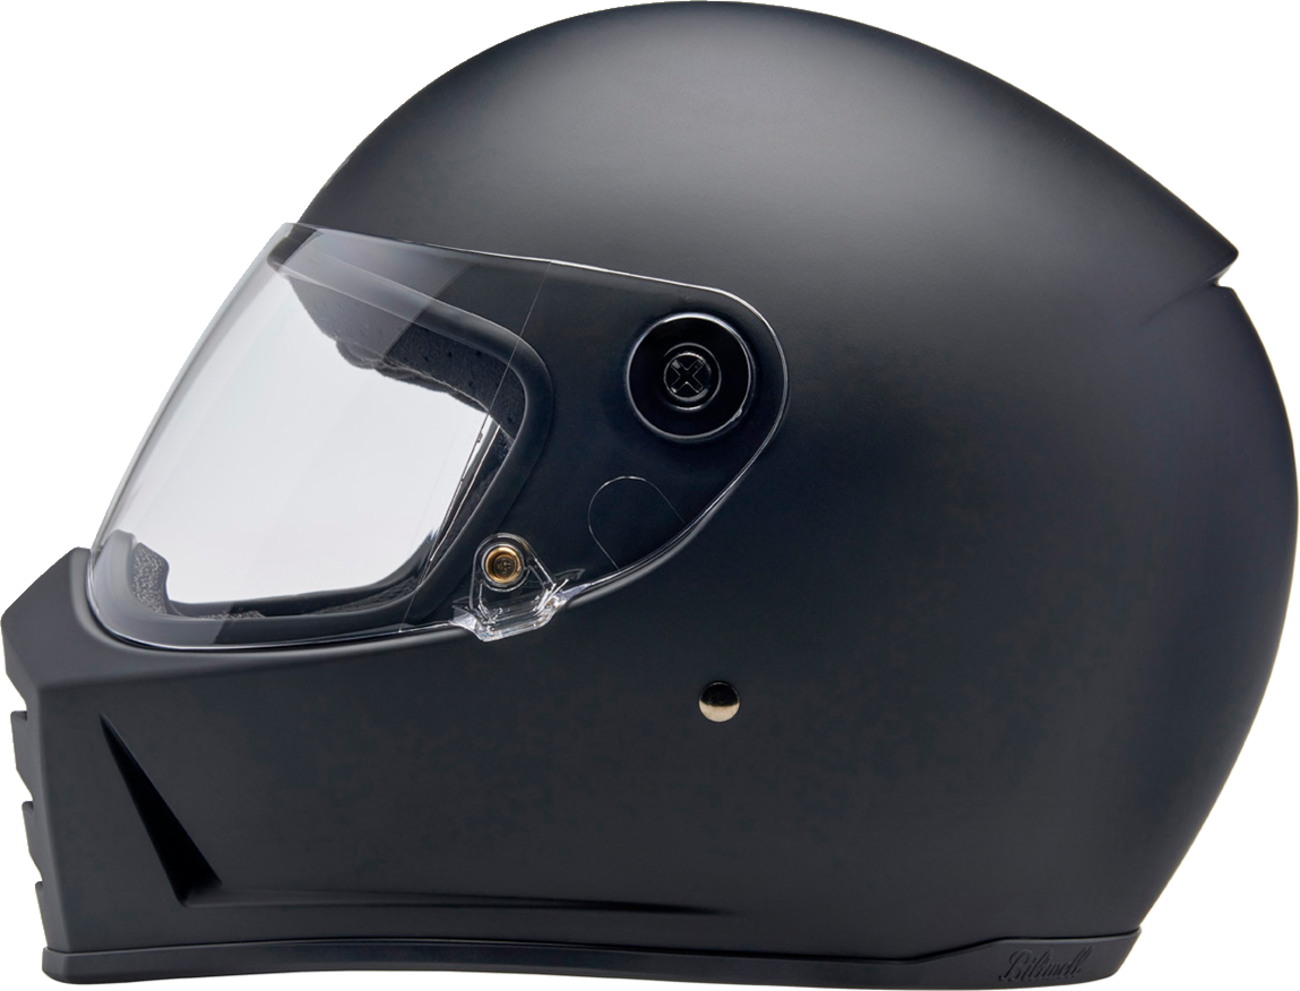 BILTWELL Lane Splitter Helmet - Flat Black - Large 1004-201-504